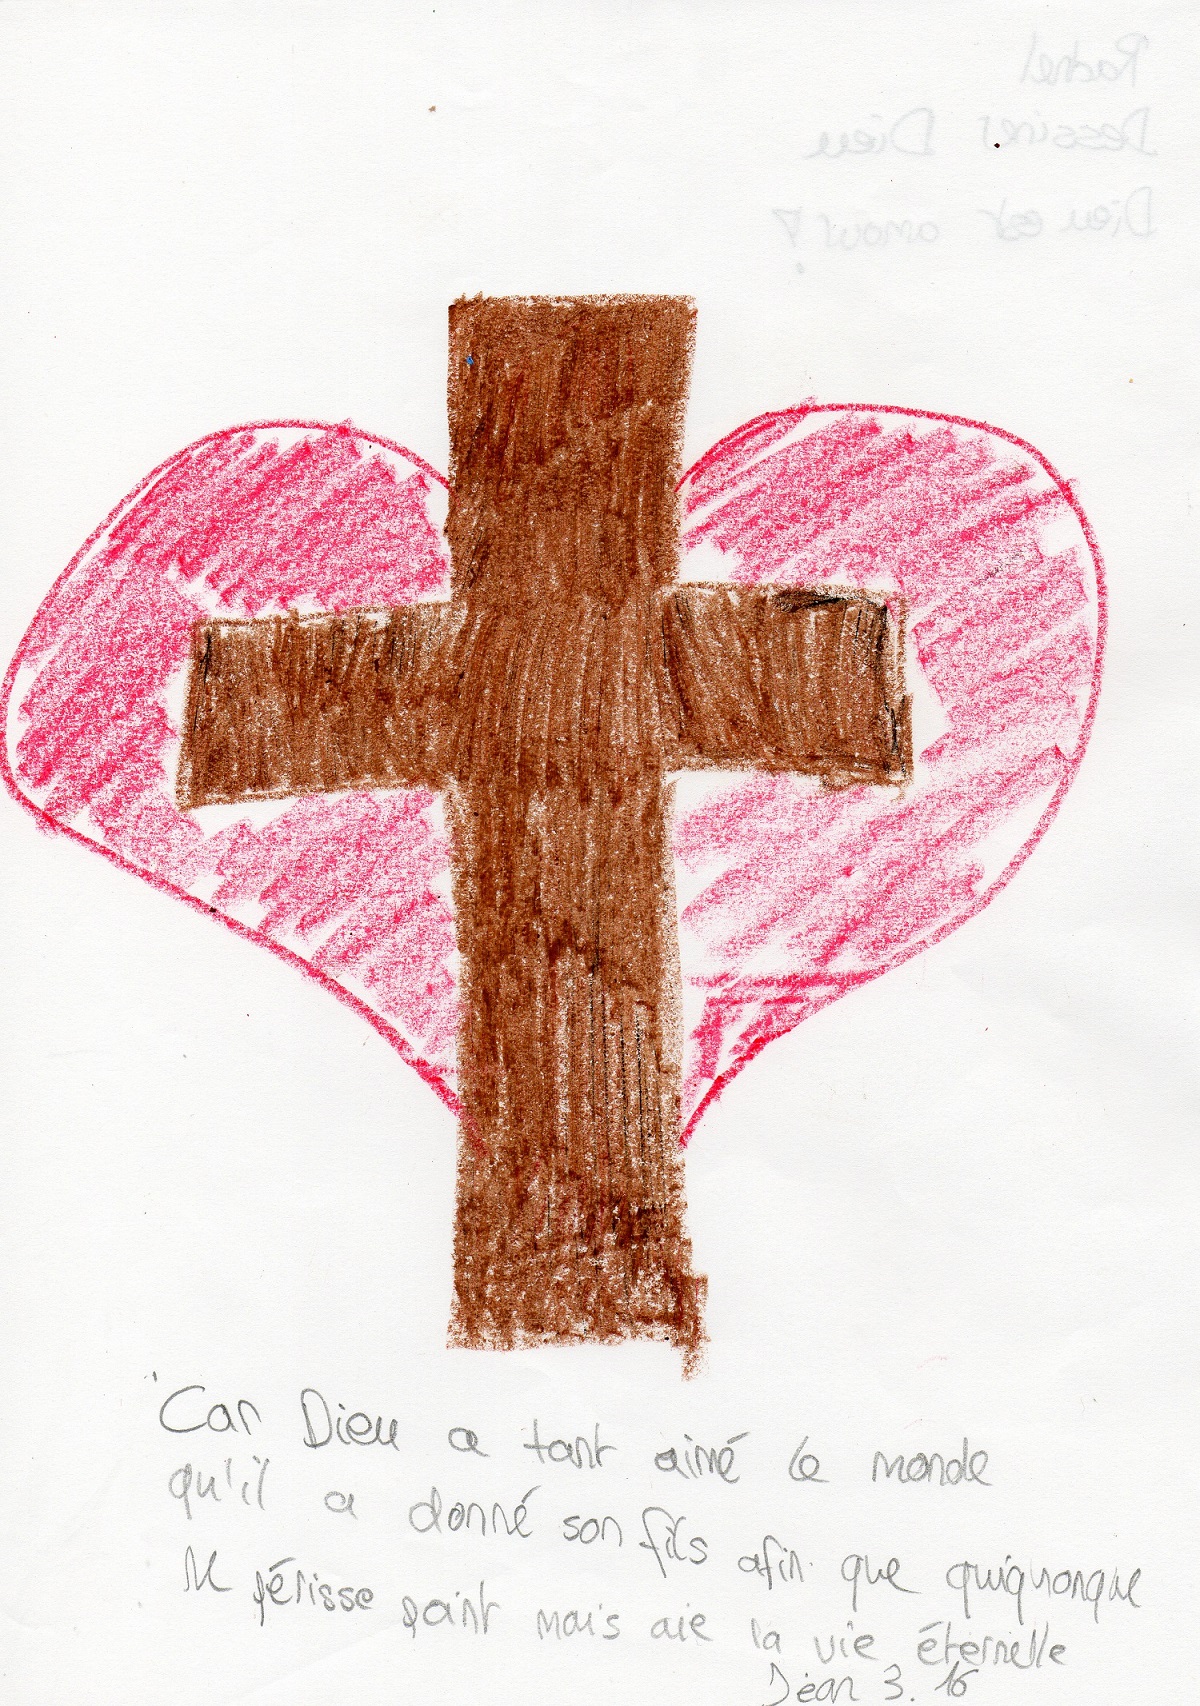 El crucifijo. Leyenda del niño: “¡Dios es amor!”